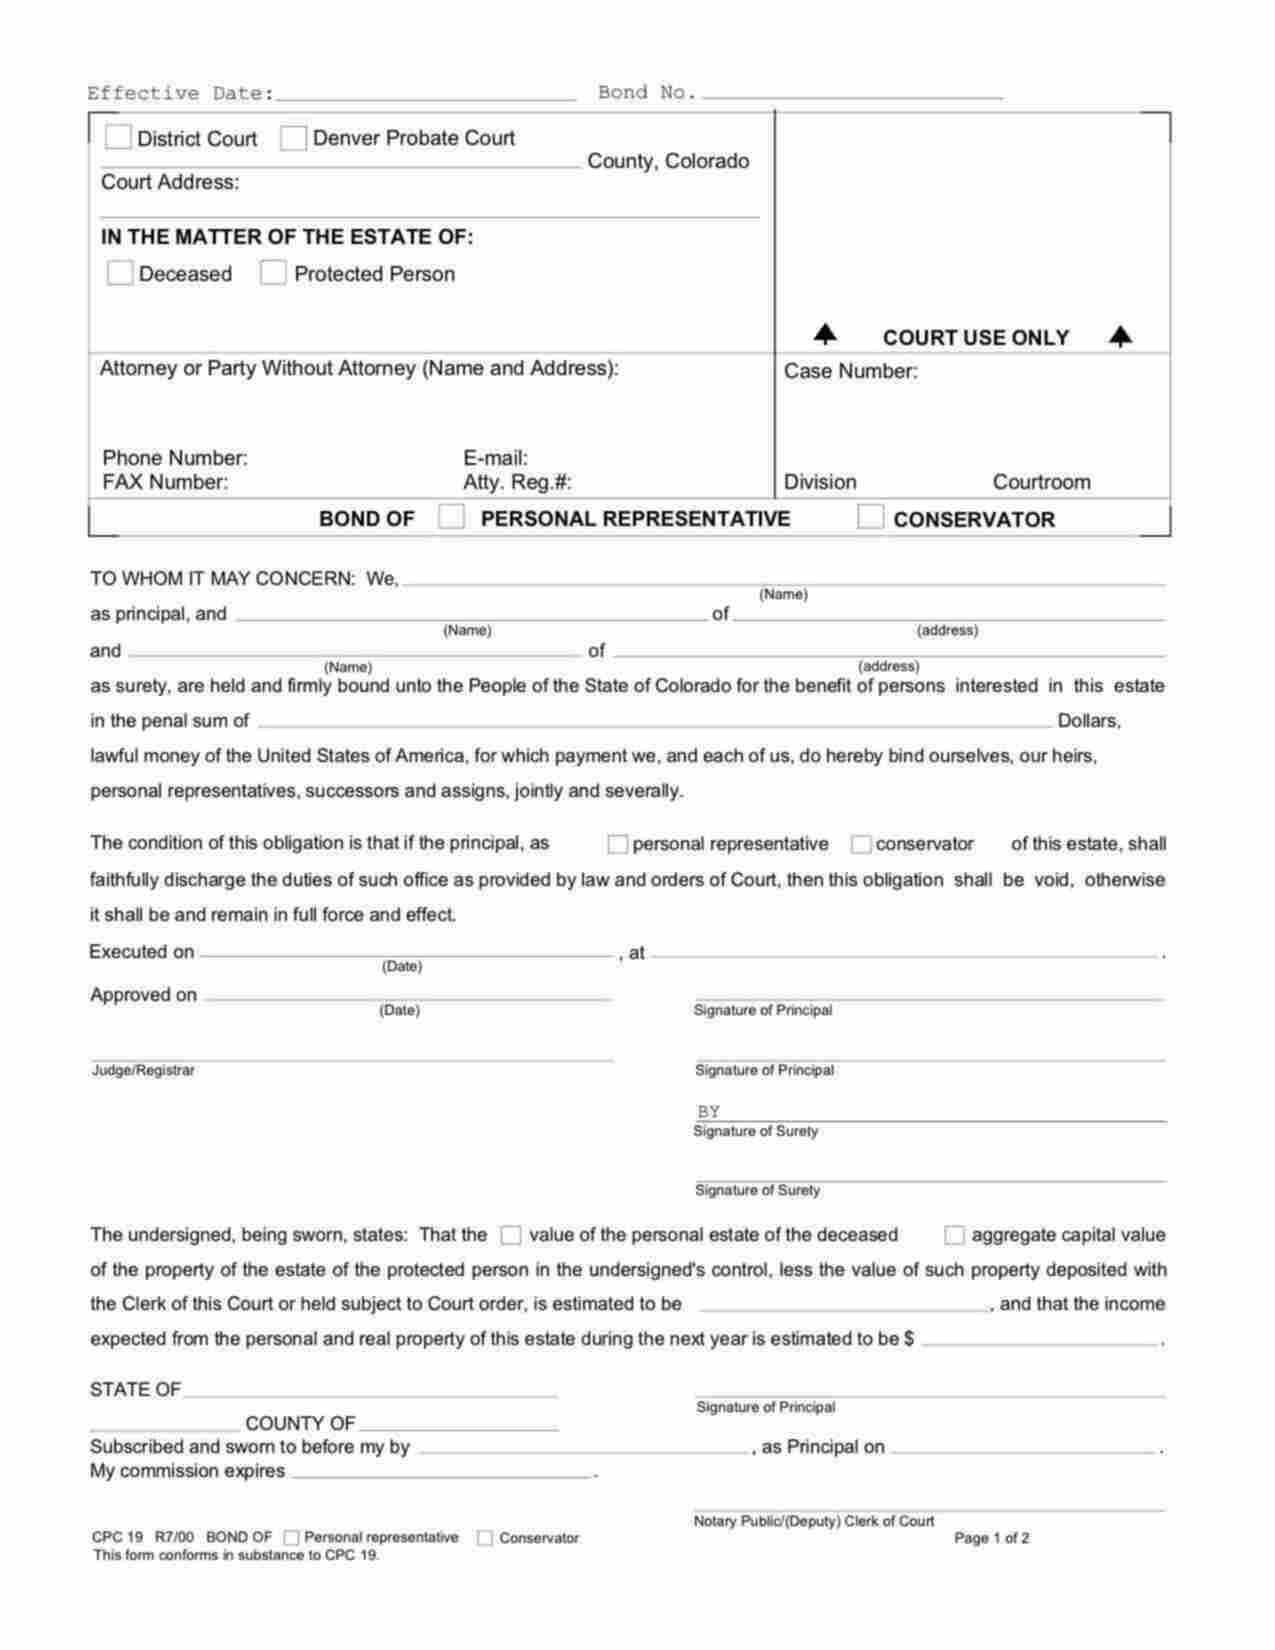 Colorado Administrator/Executor Bond Form